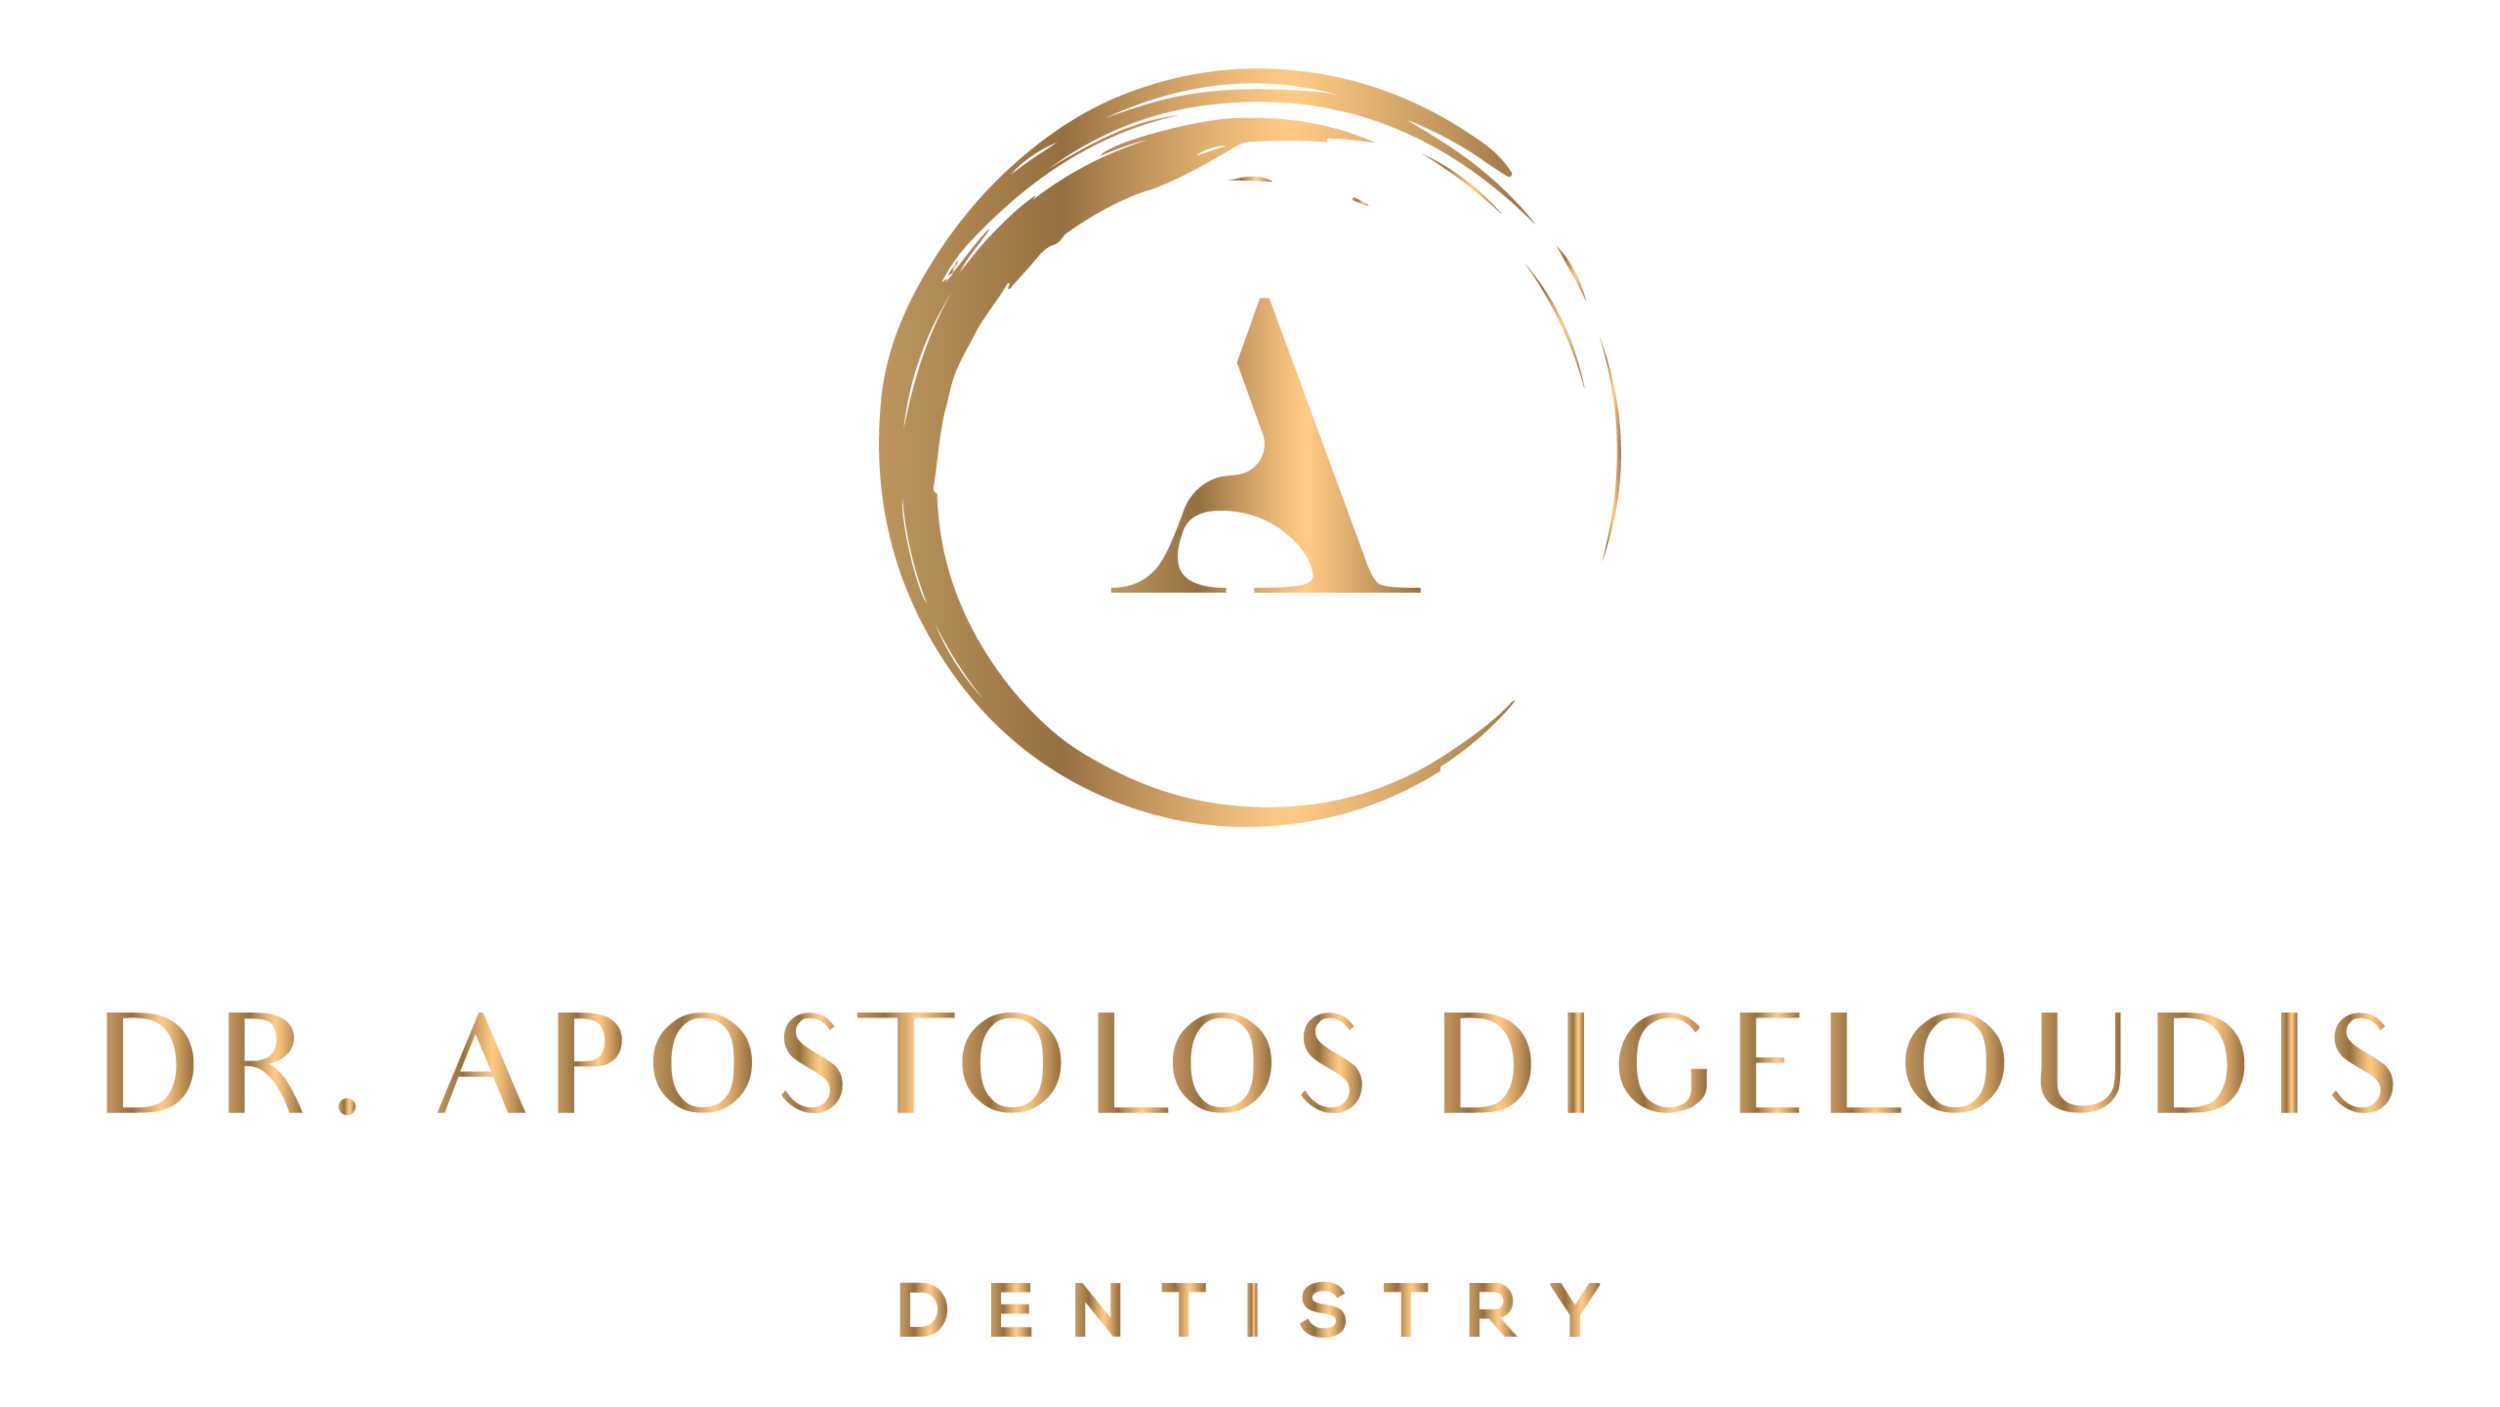 Ihr Zahnarzt in Hannover -Dr. Apostolos Digeloudis